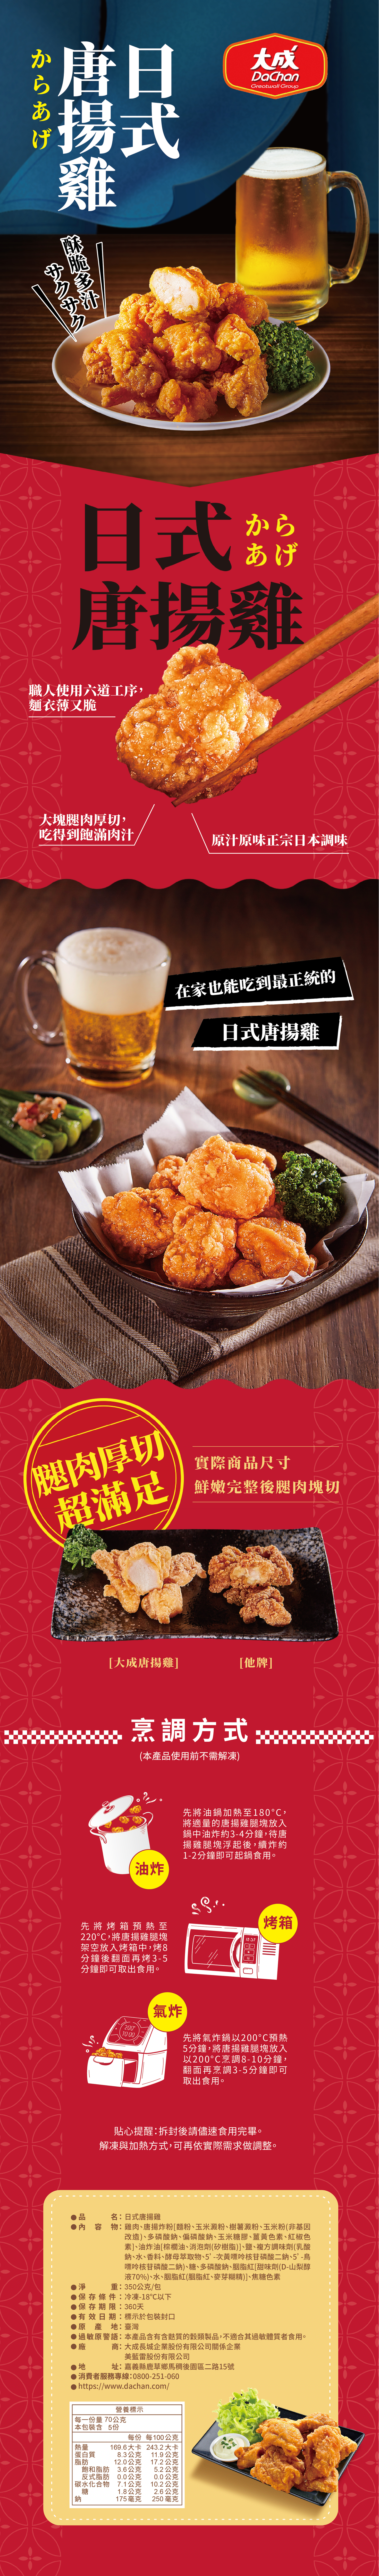 【大成食品】日式唐揚雞350g